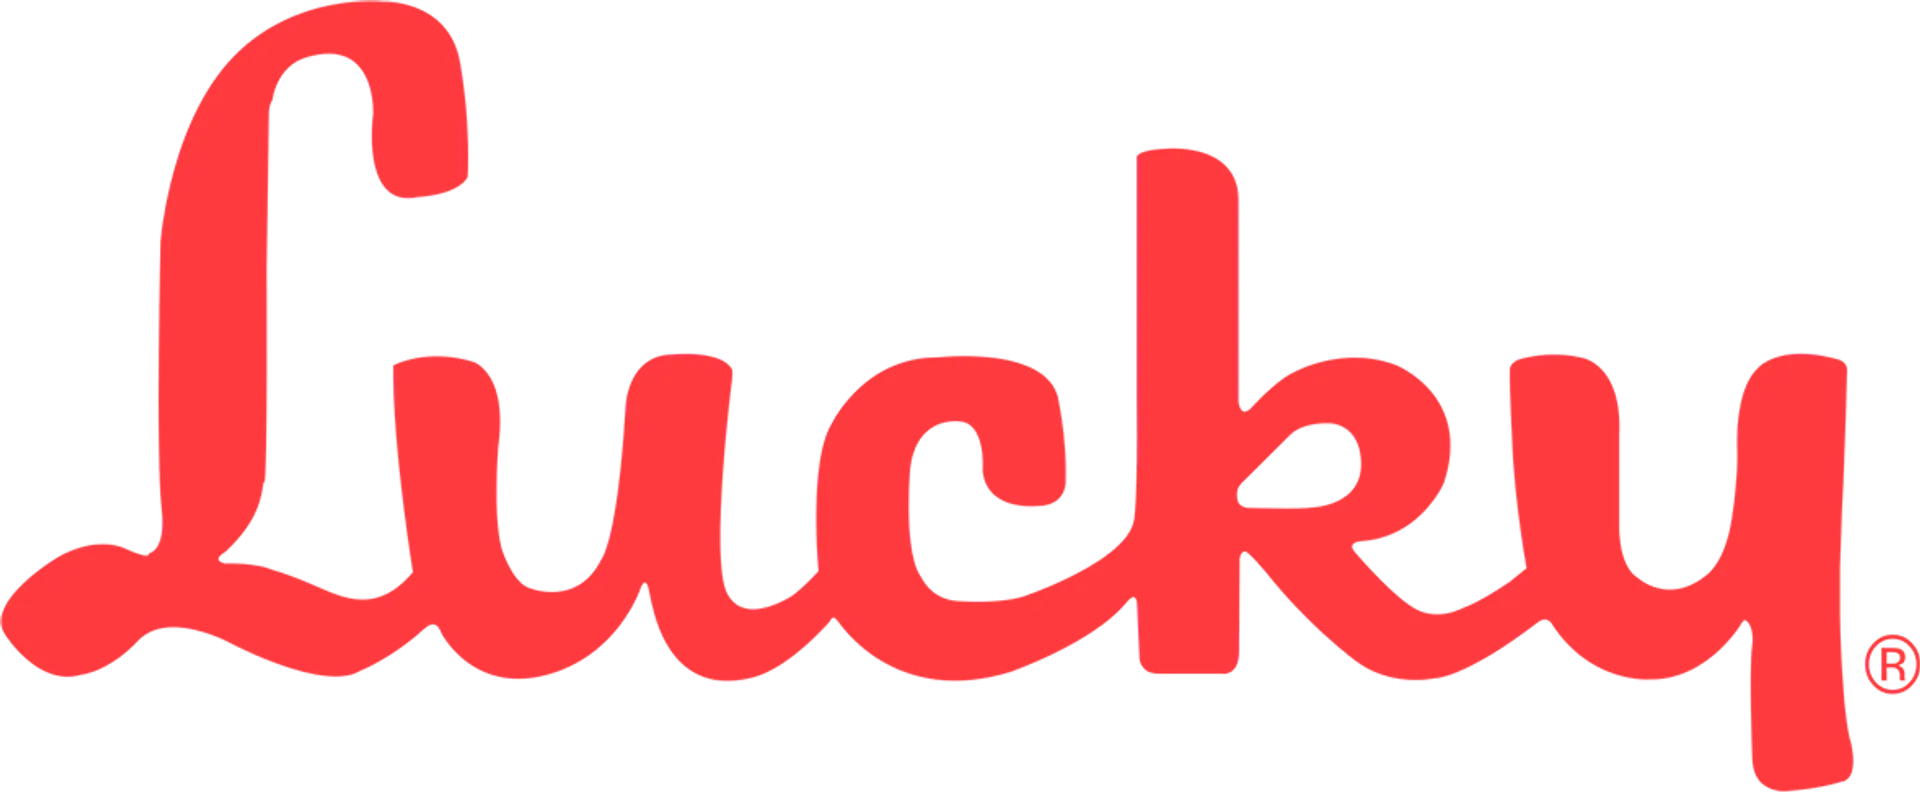 LUCKY SUPERMARKETS logo de catálogo